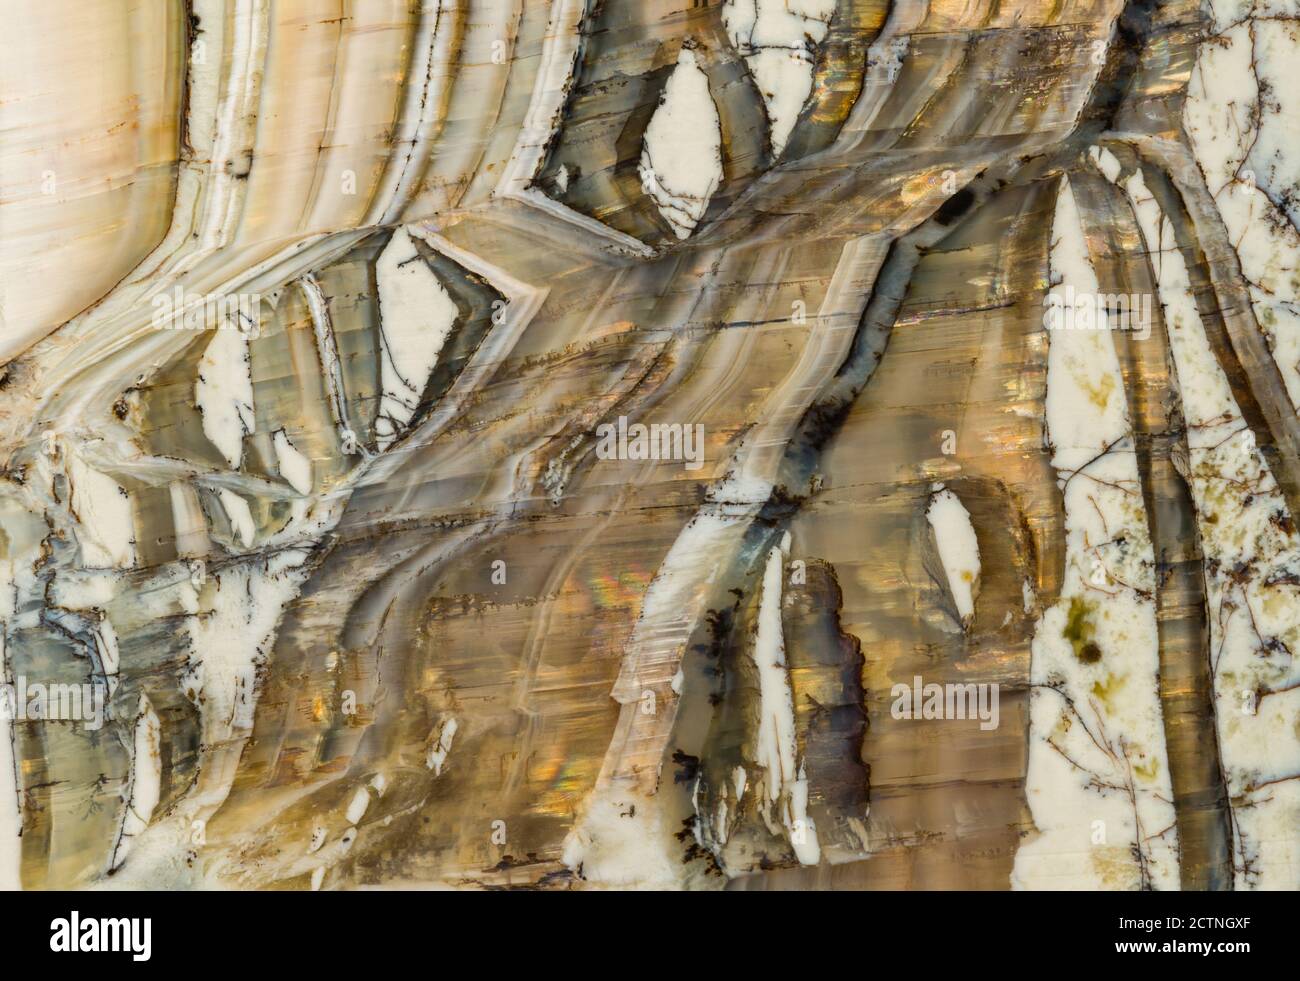 Makroaufnahme des strukturellen Details in einem pietersite Edelstein aus Arizona. Auch bekannt als 'Arizona Tigerauge' ist es eine Vielzahl von Chalcedon, die Amphibole Mineralfasern enthält, die in einem chatoyant optischen Reflexionseffekt führen. Stockfoto